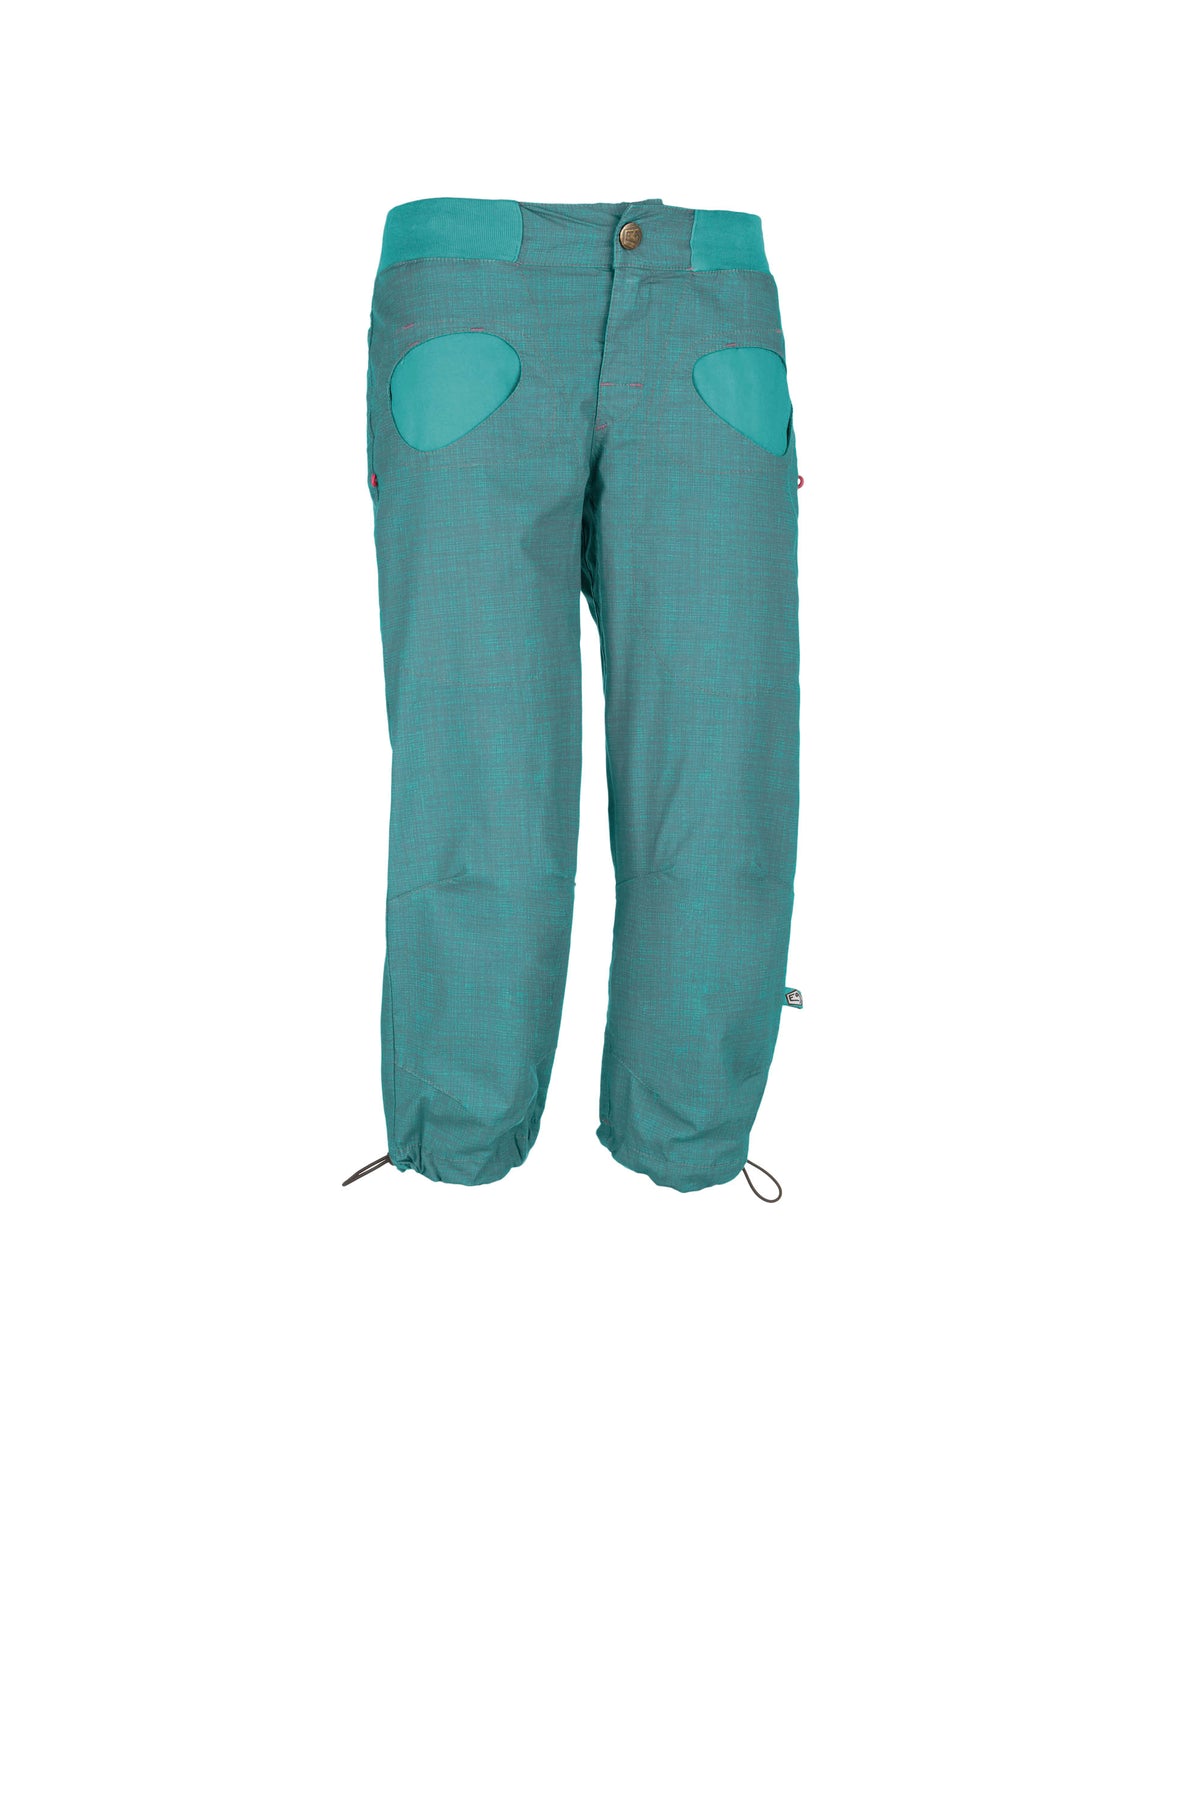 E9 Onda Story W - Long - Climbing - Pants - Women's Mountain Clothing en